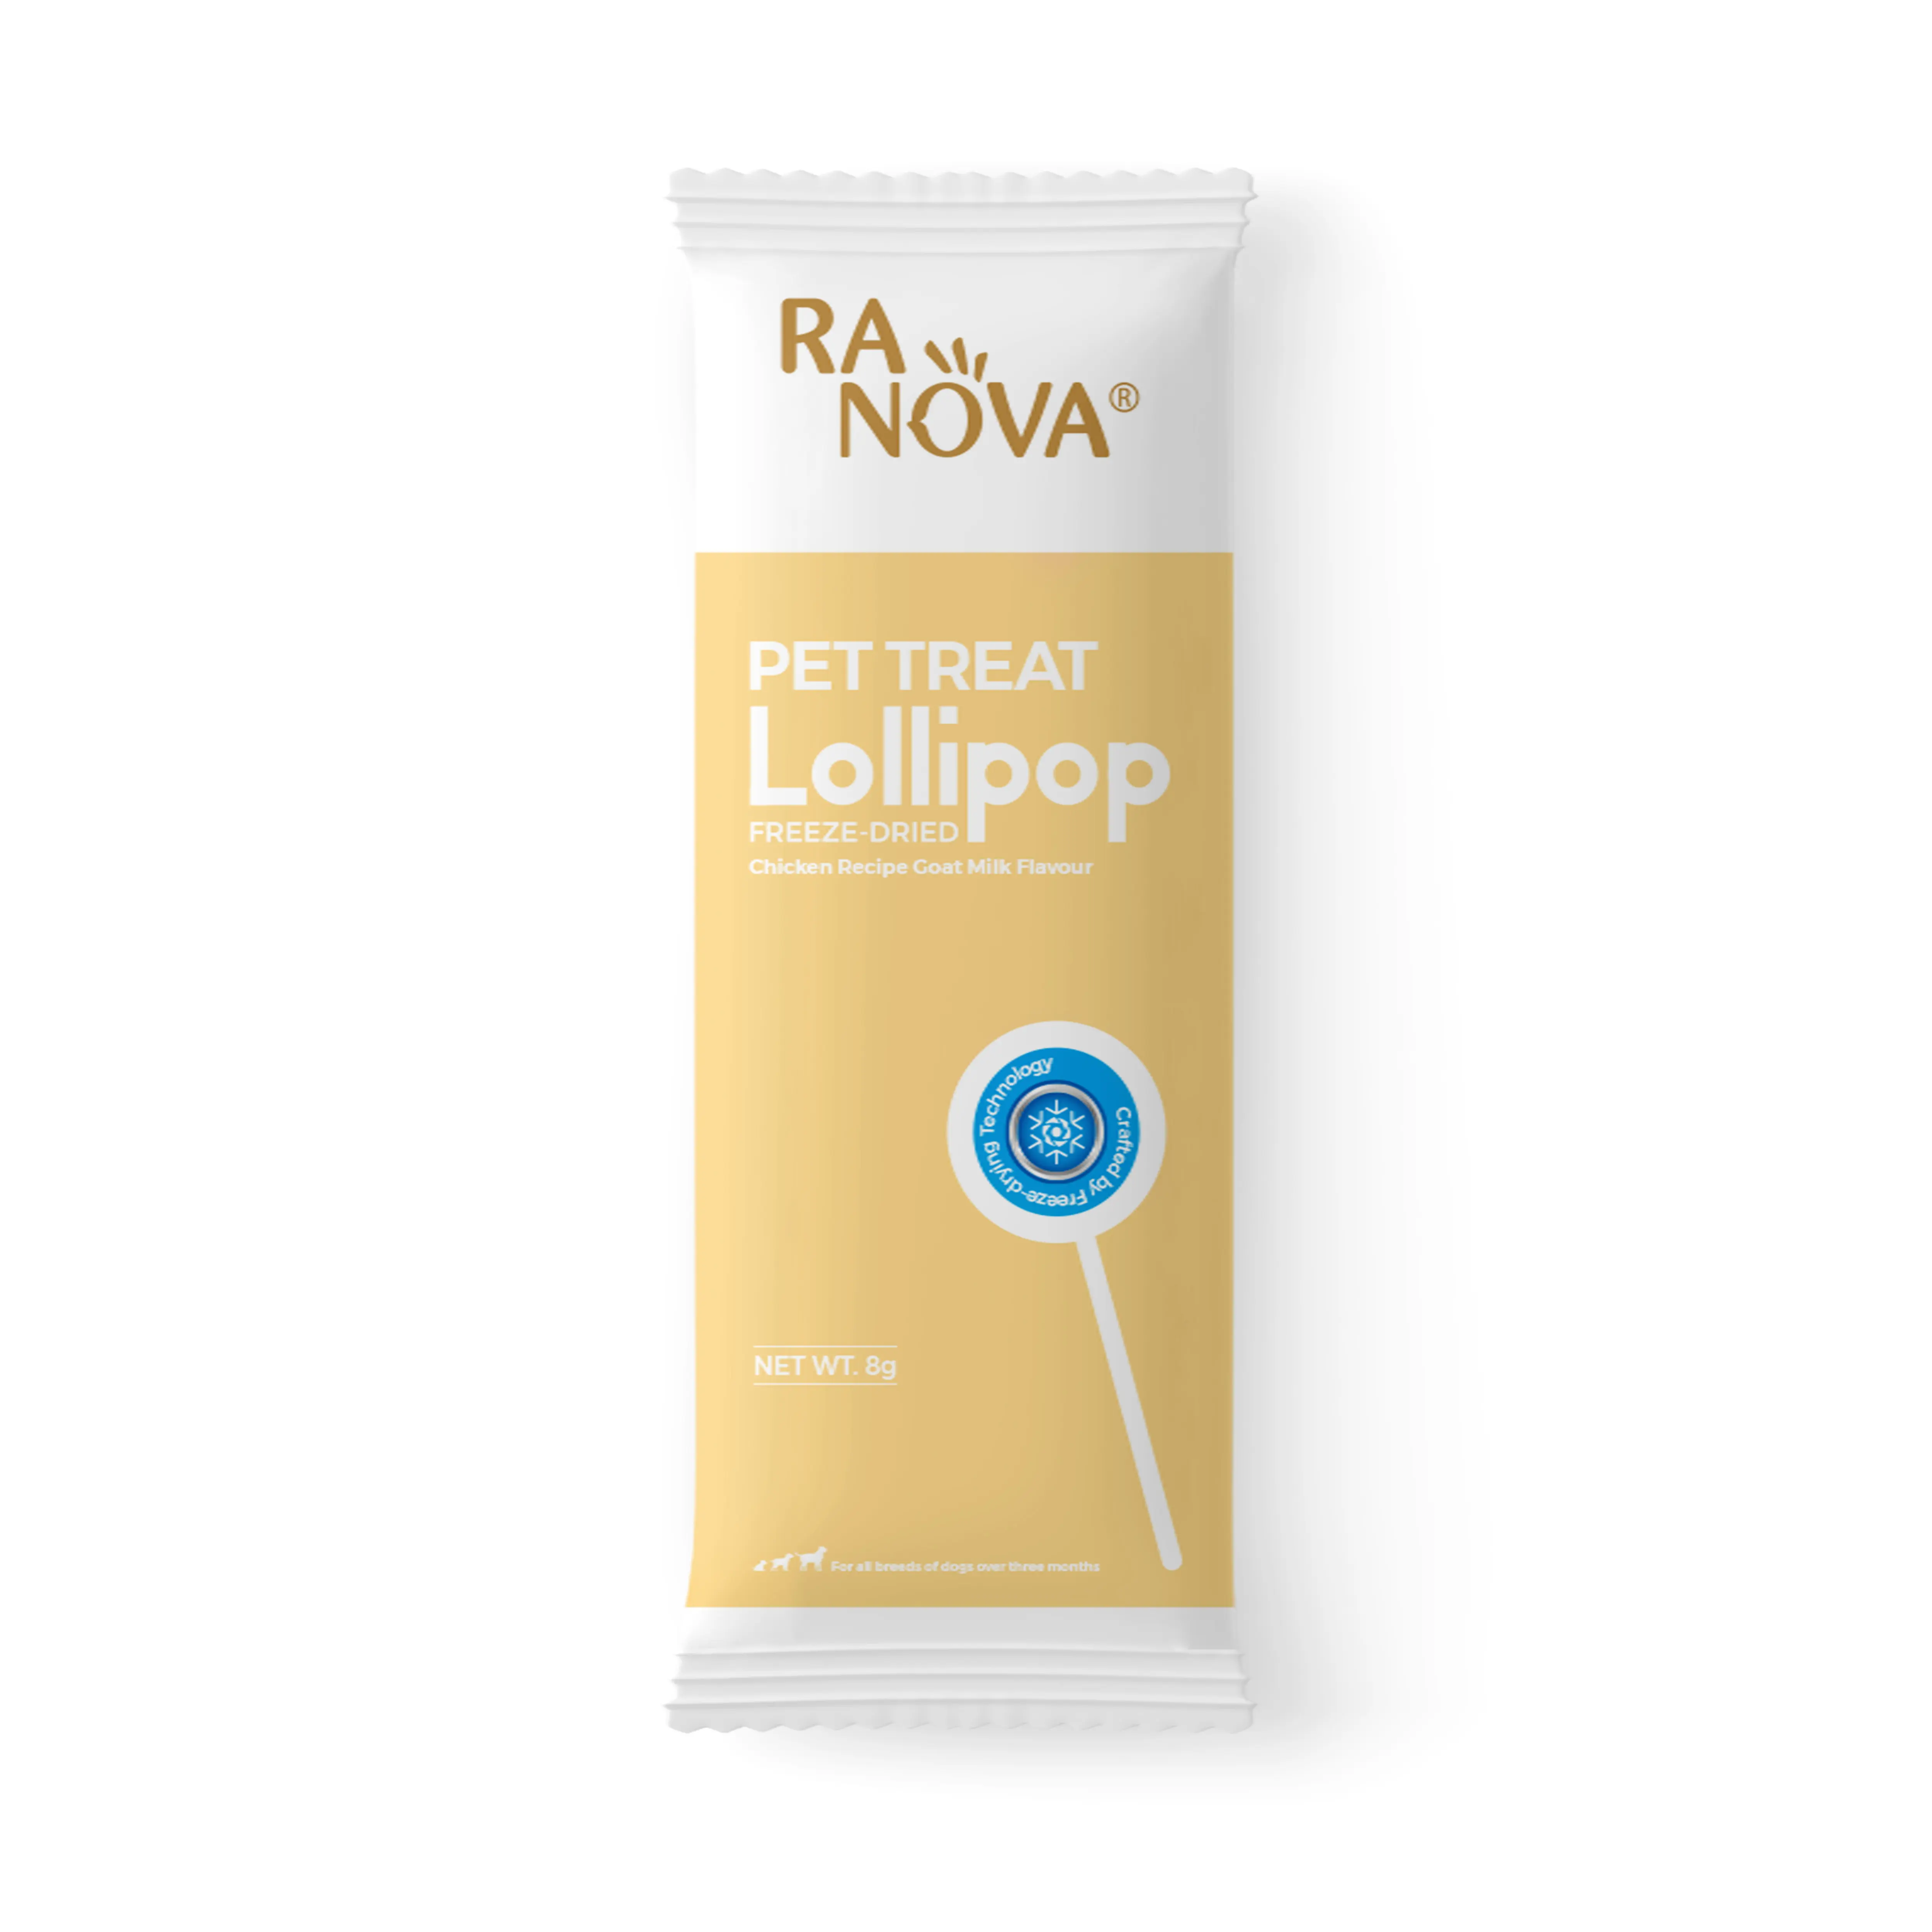 Vente en gros de suppléments de marque privée de haute qualité pour soins de santé pour chiens odm Oem Pet Treat Suppléments nutritionnels FD lollipop